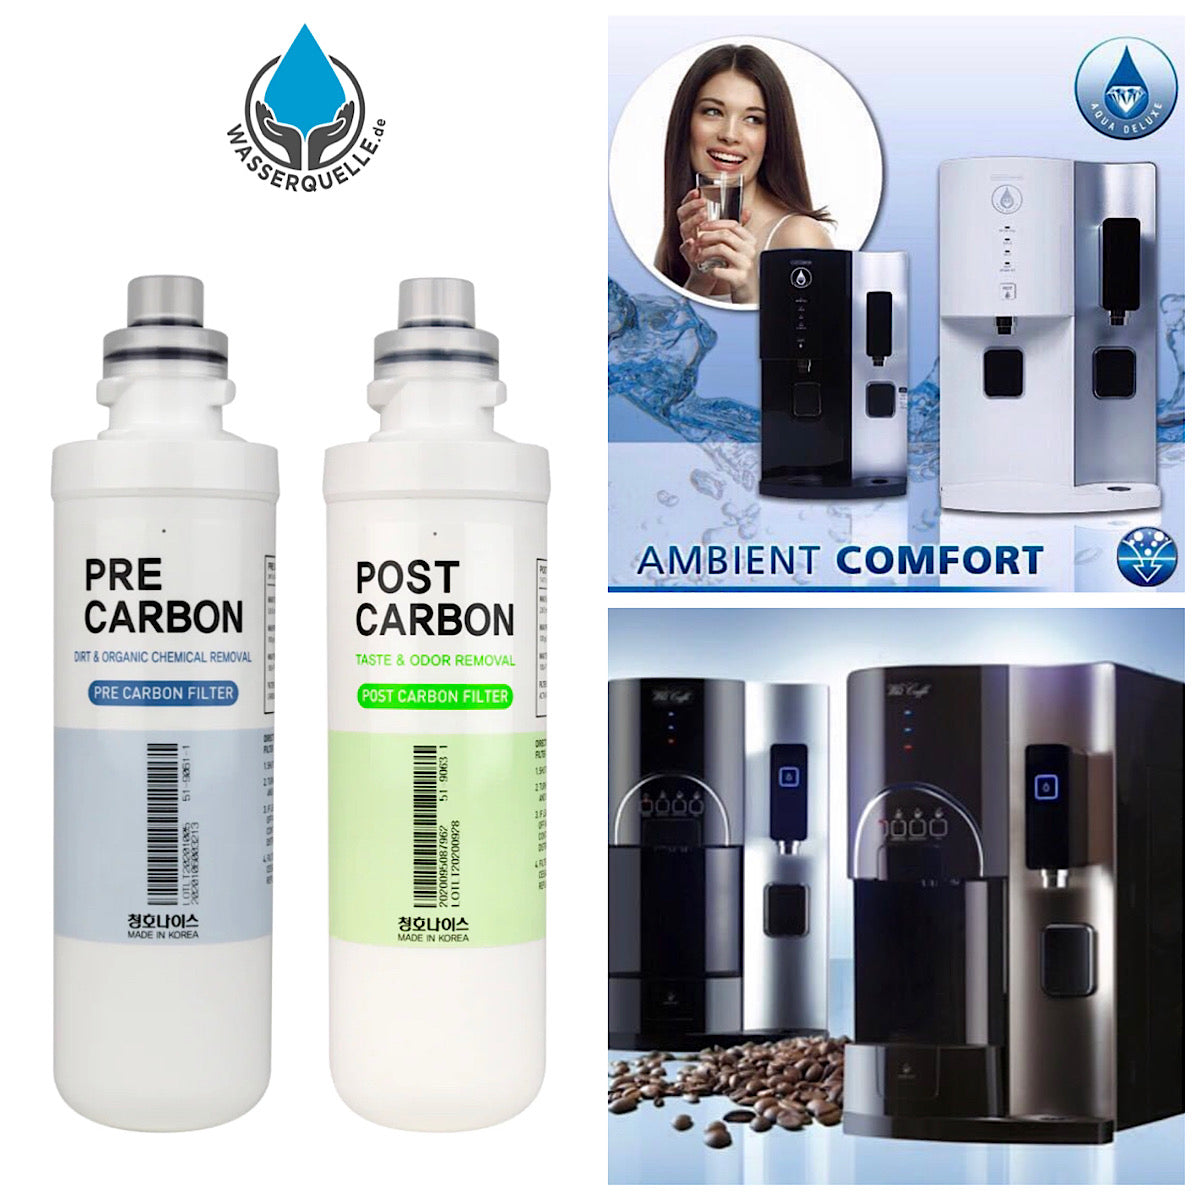 T Filtersatz | Vor & Nachfilter | Pre Carbon, Post Carbon für Ambient Comfort ( CHP-3930D ), WHI Caffee Ambient ( CHP-3931D ) und Omni (CHP-4030D)